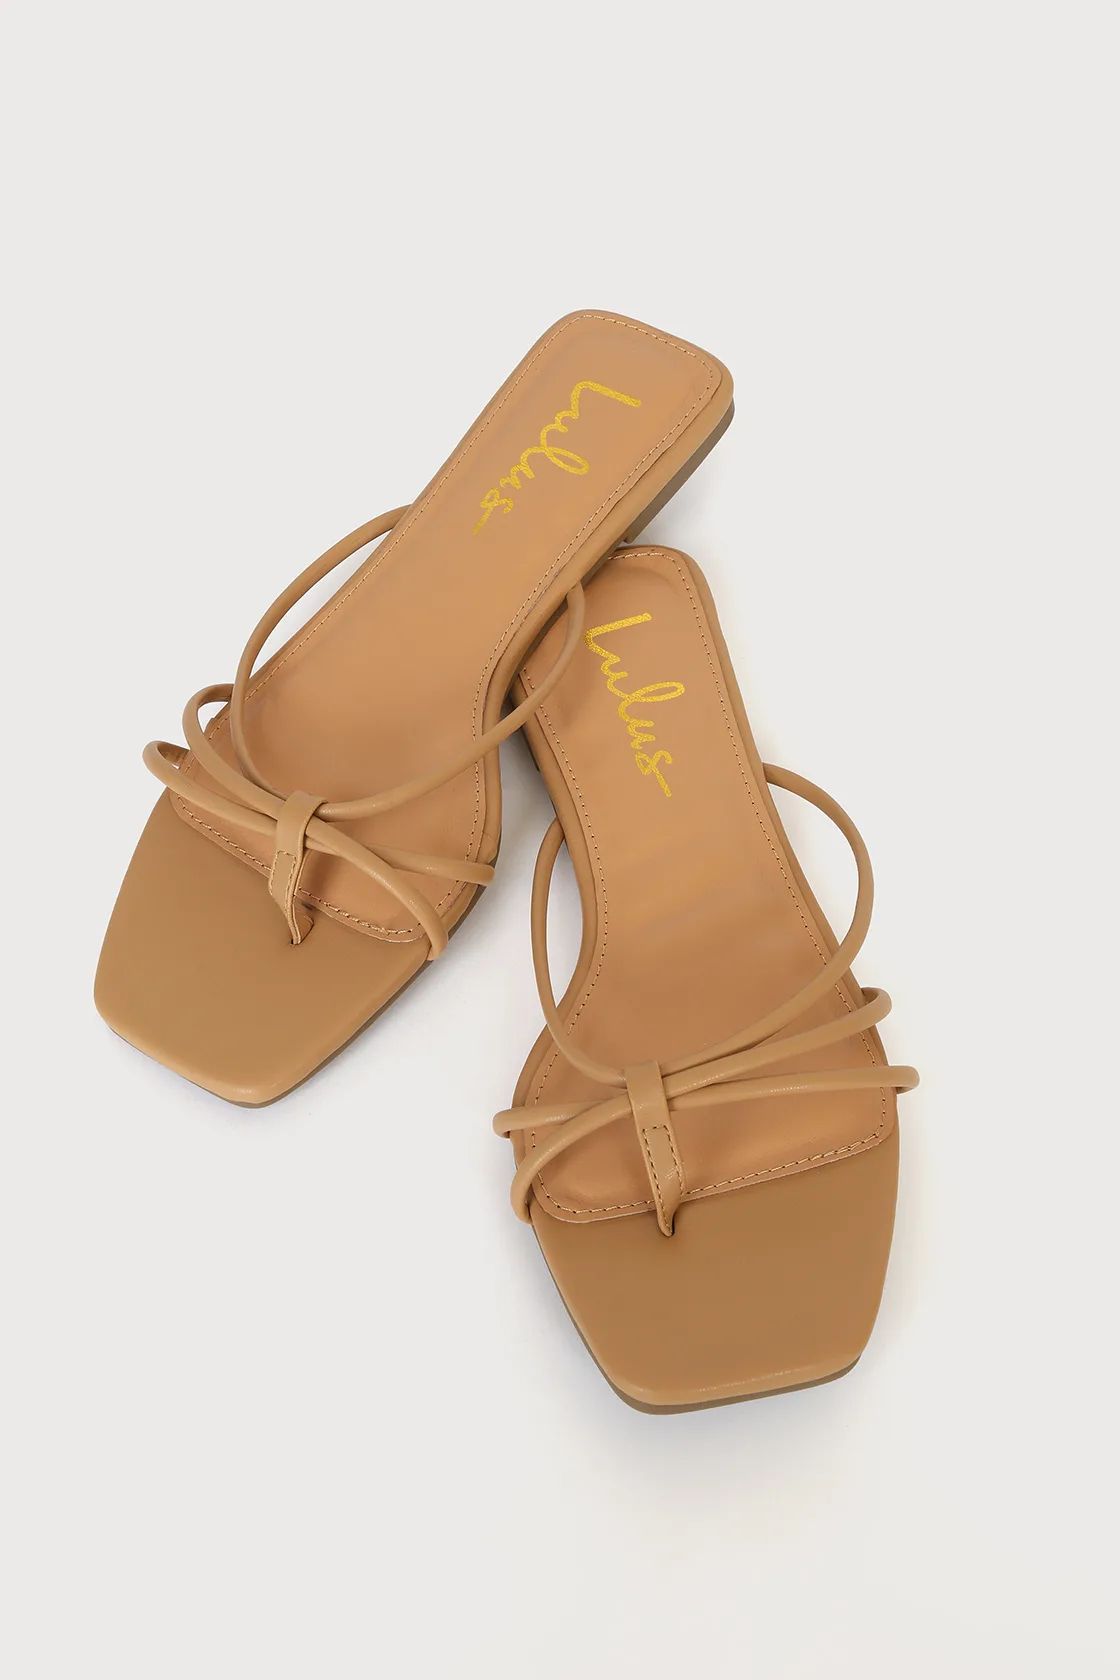 Akiko Medium Nude Flat Thong Sandals | Lulus (US)